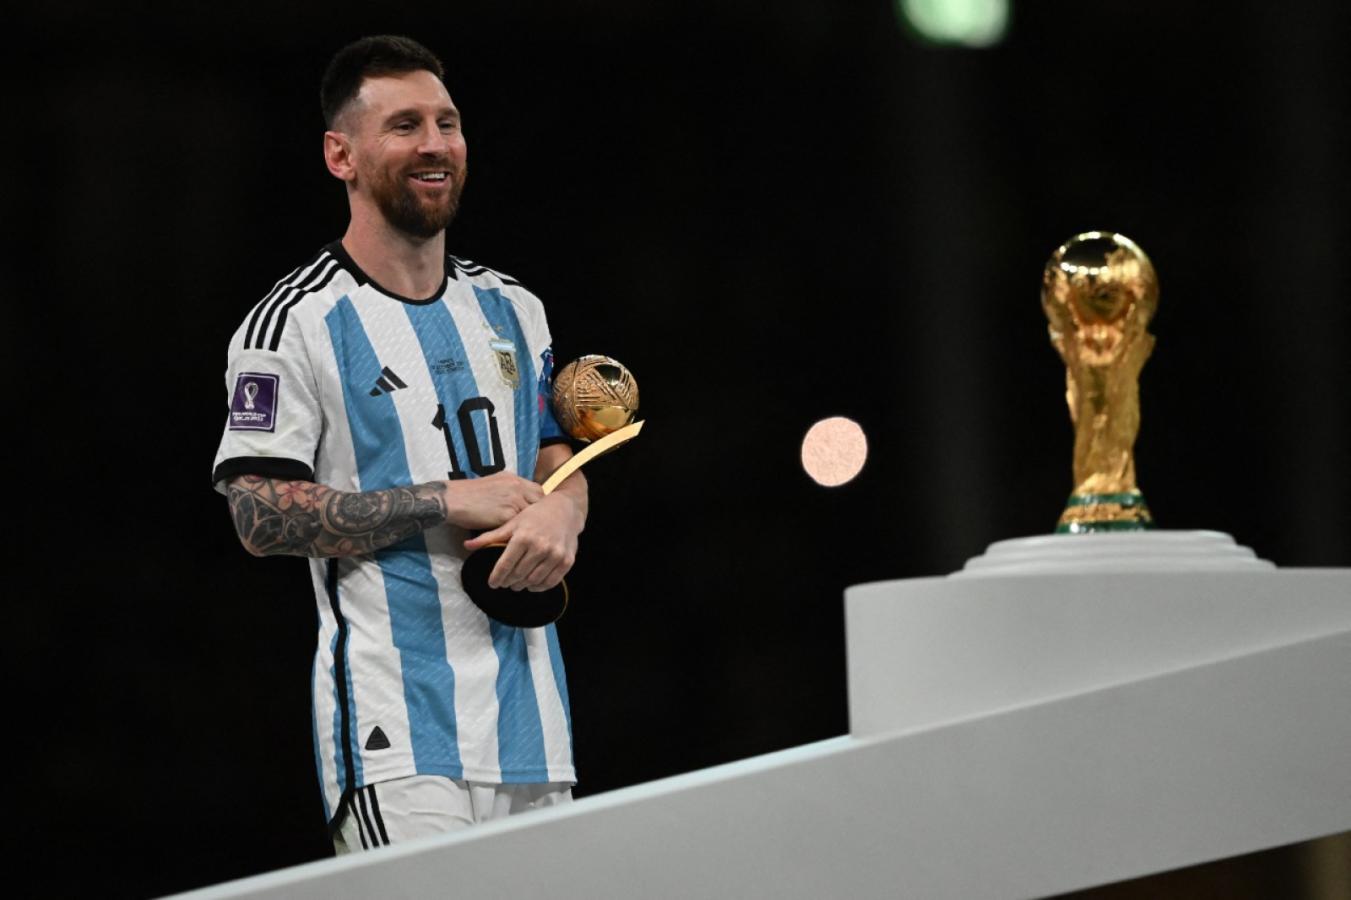 Imagen Messi en la premiación, rumbo al momento más esperado (AFP)